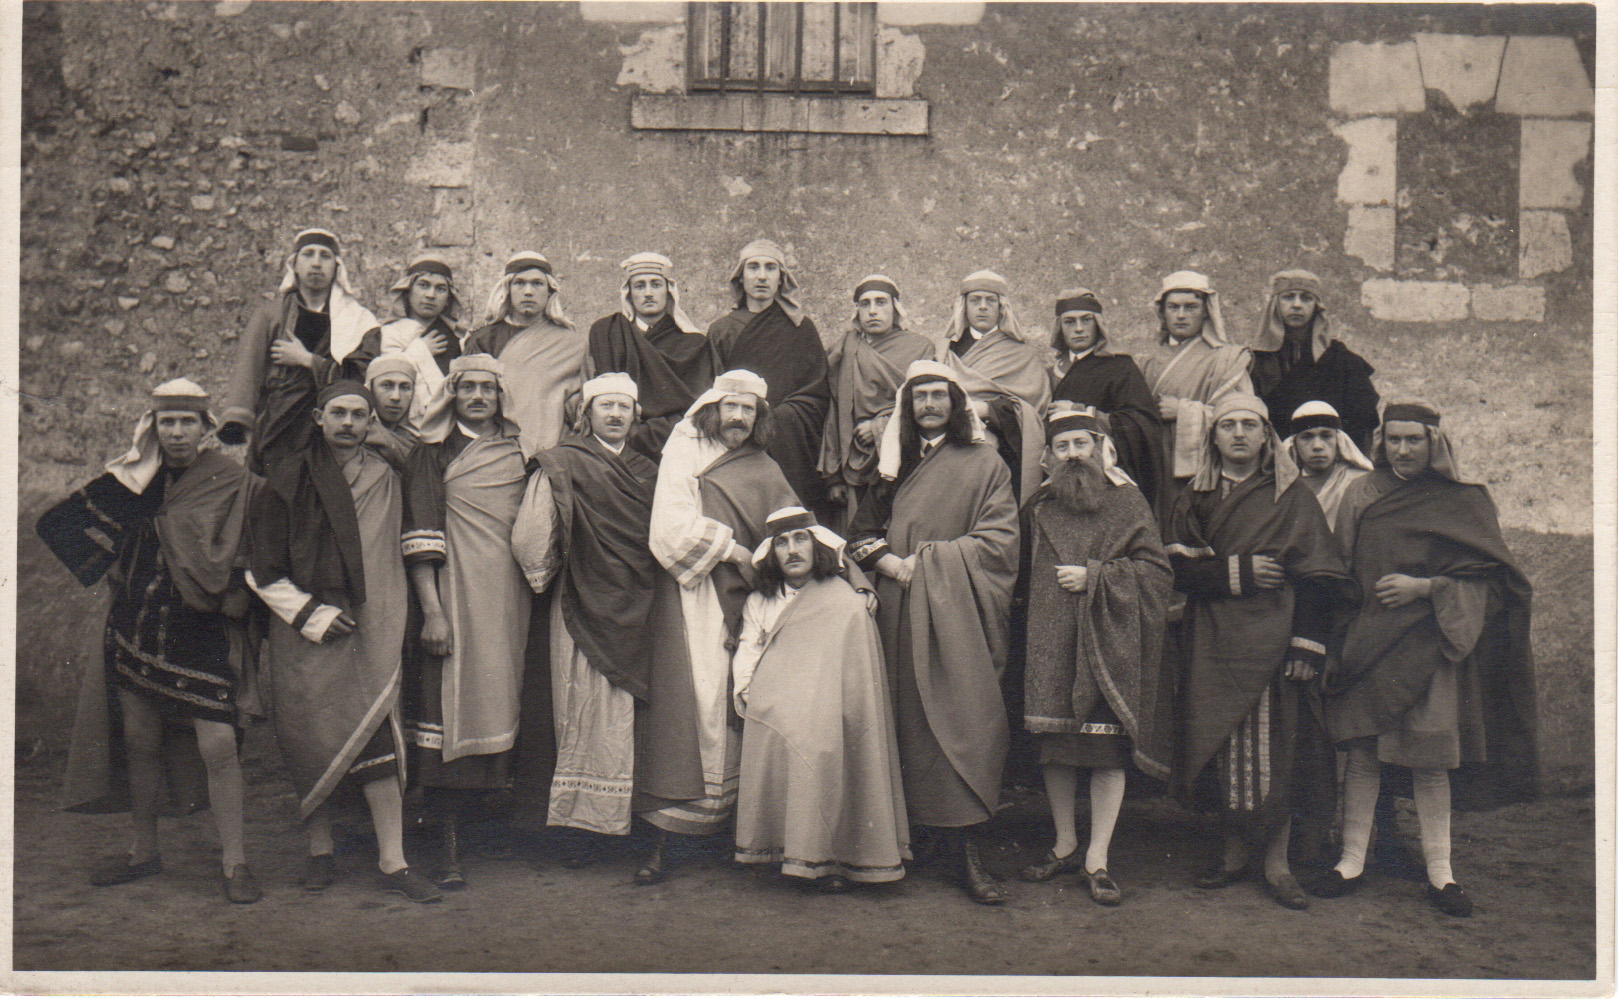 L'équipe de théatre de l'Etoile Saint Marc dans les années 30